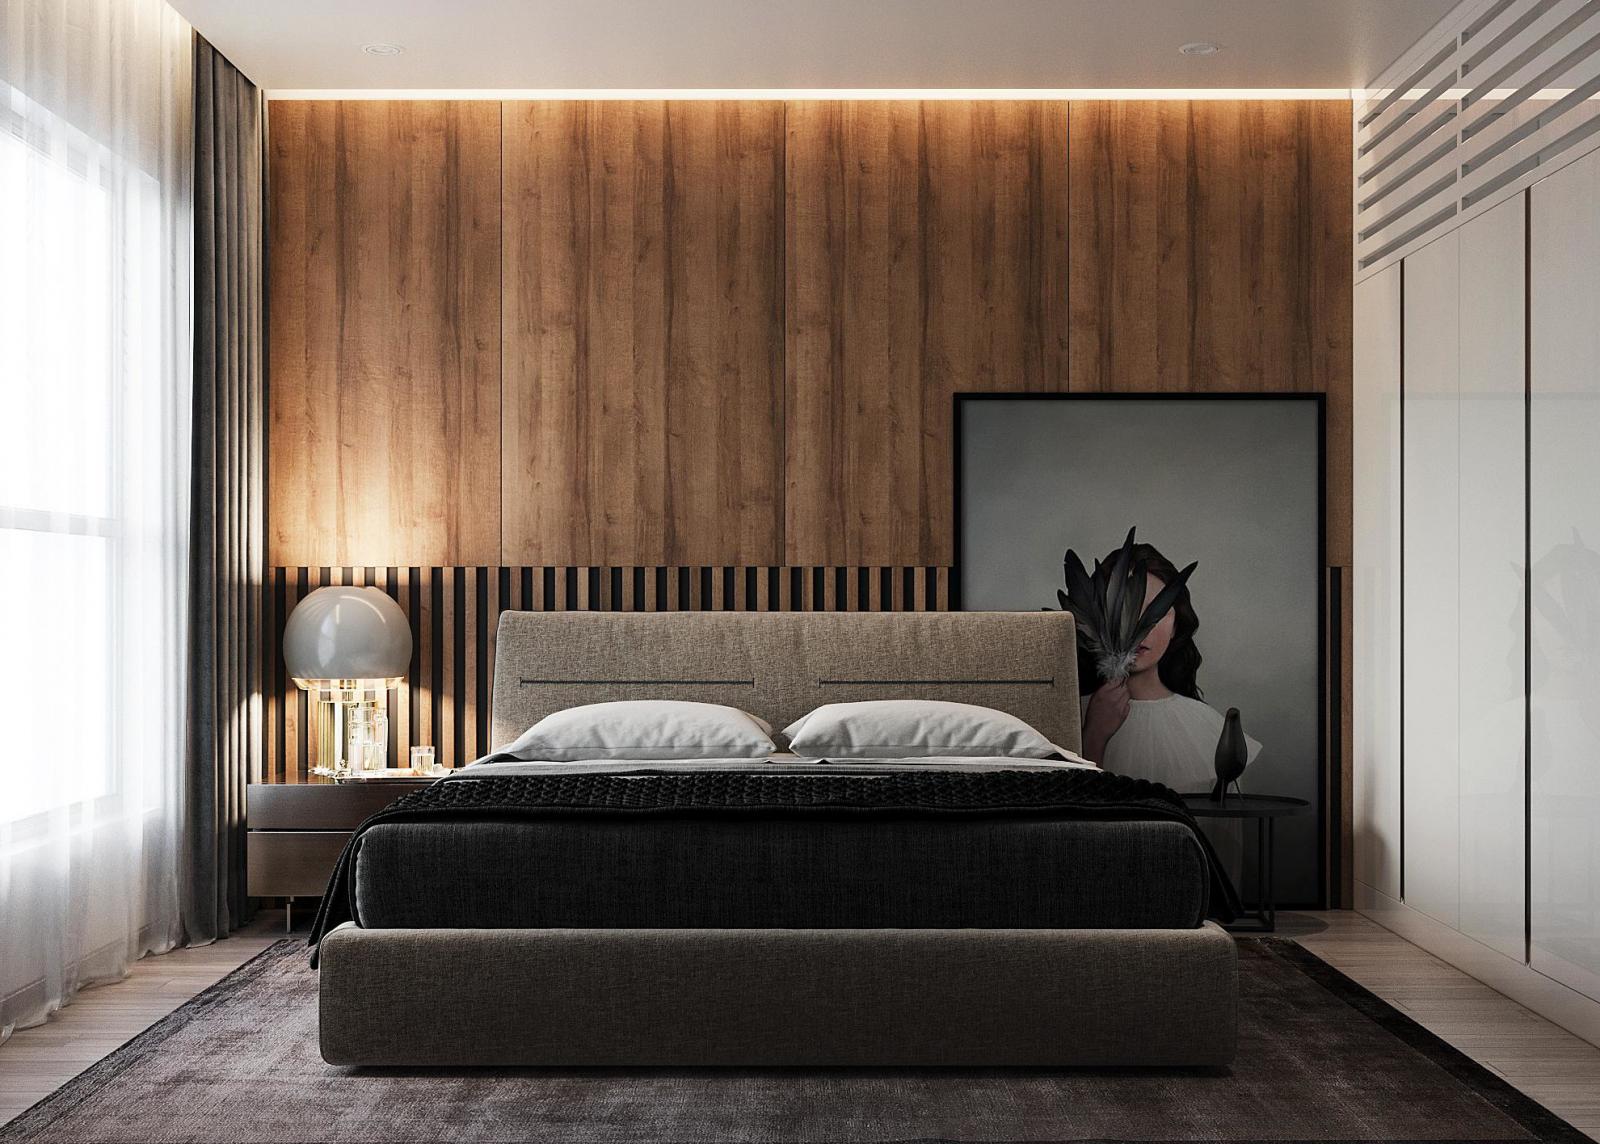 hình ảnh mẫu phòng ngủ tối giản với ga gối màu xám trung tính, tường đầu giường ốp gỗ, rèm cửa hai lớp, tranh nghệ thuật đầu giường, tủ quần áo